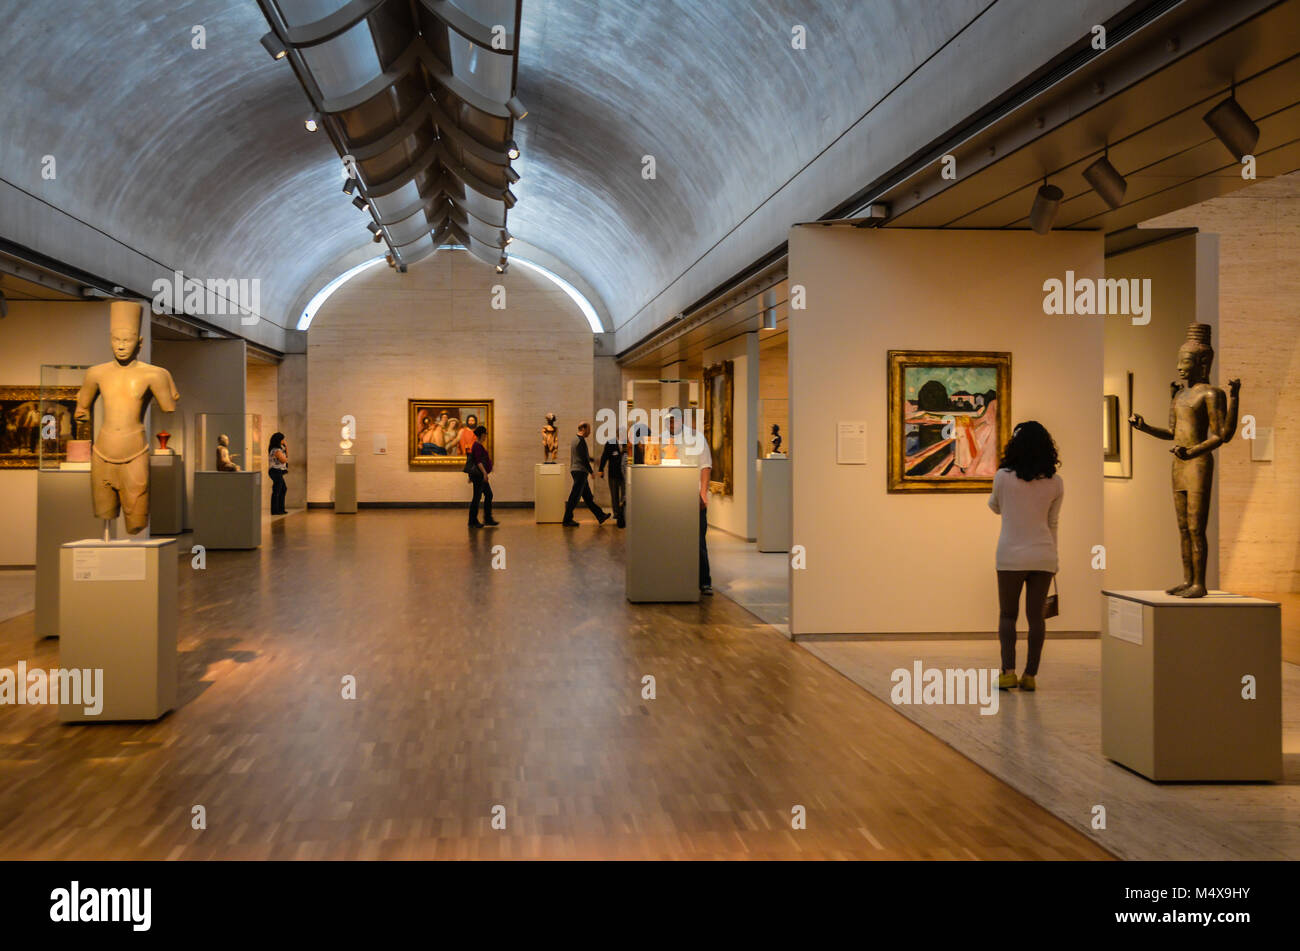 Fort Worth, Texas. Kimball Art Museum Galleria interna mostra collezioni che vanno dall'antichità al XX secolo di arte contemporanea. Foto Stock